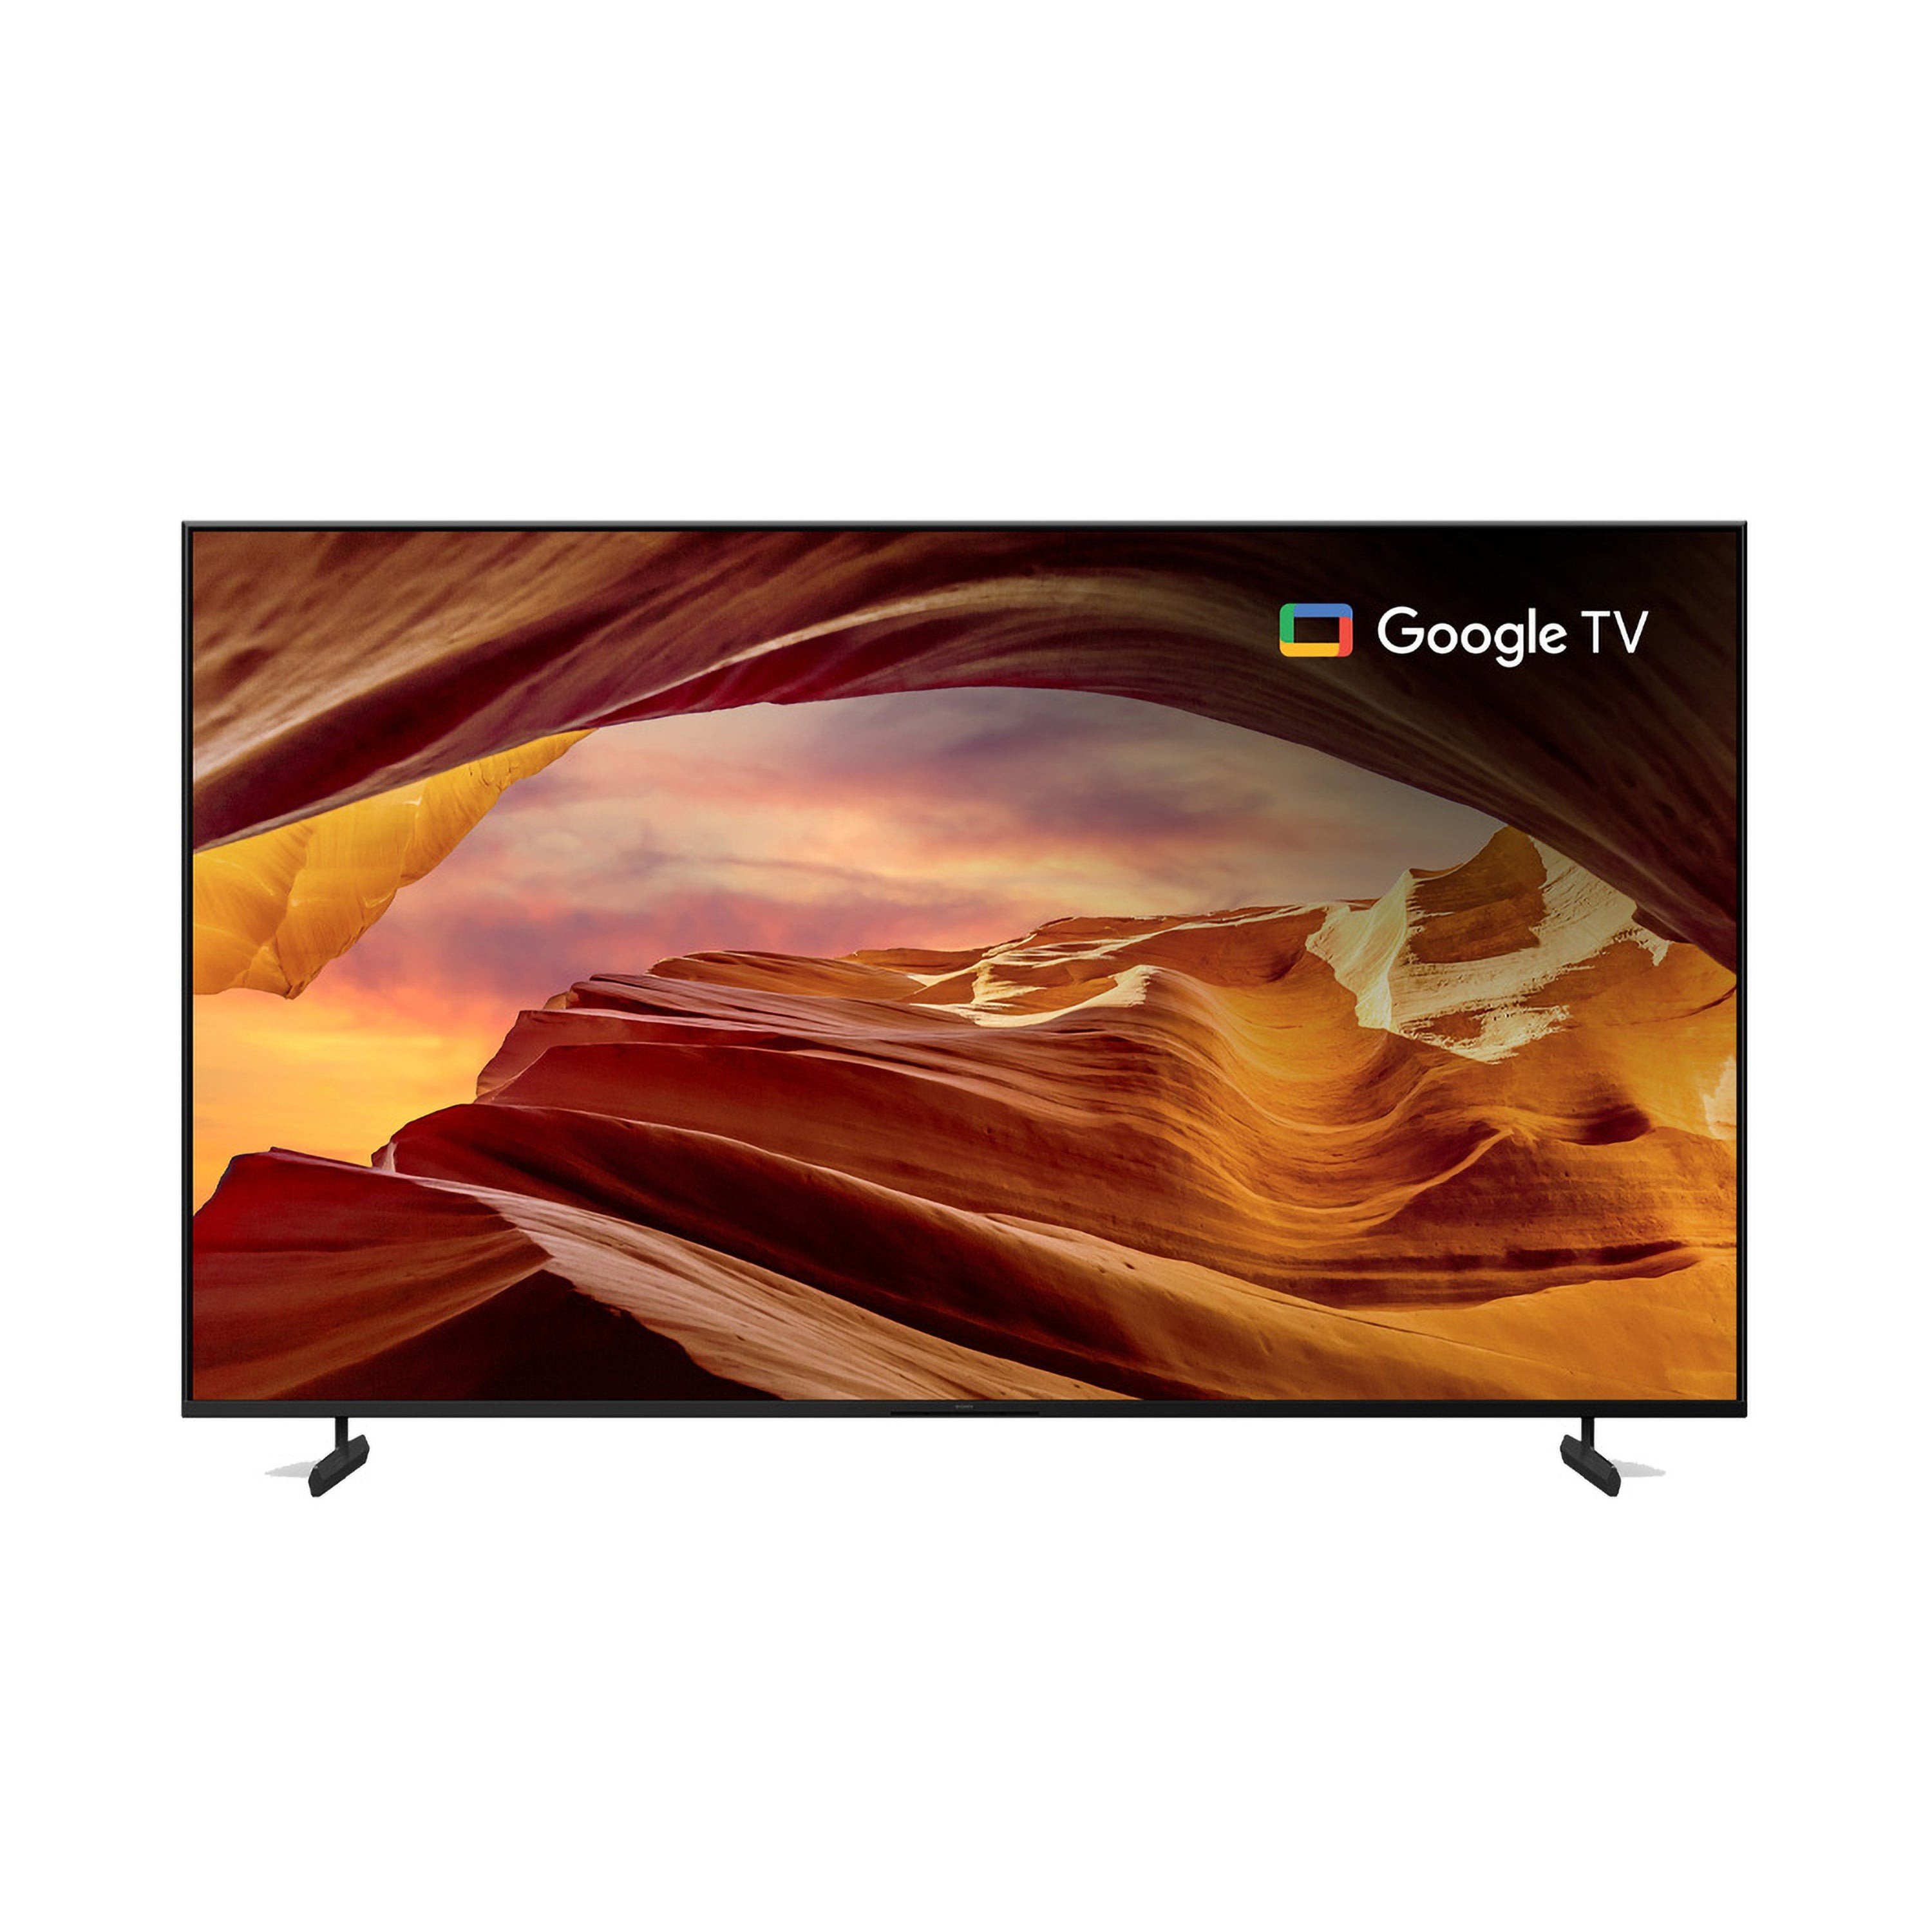 75" X77L 4K HDR LED Google TV